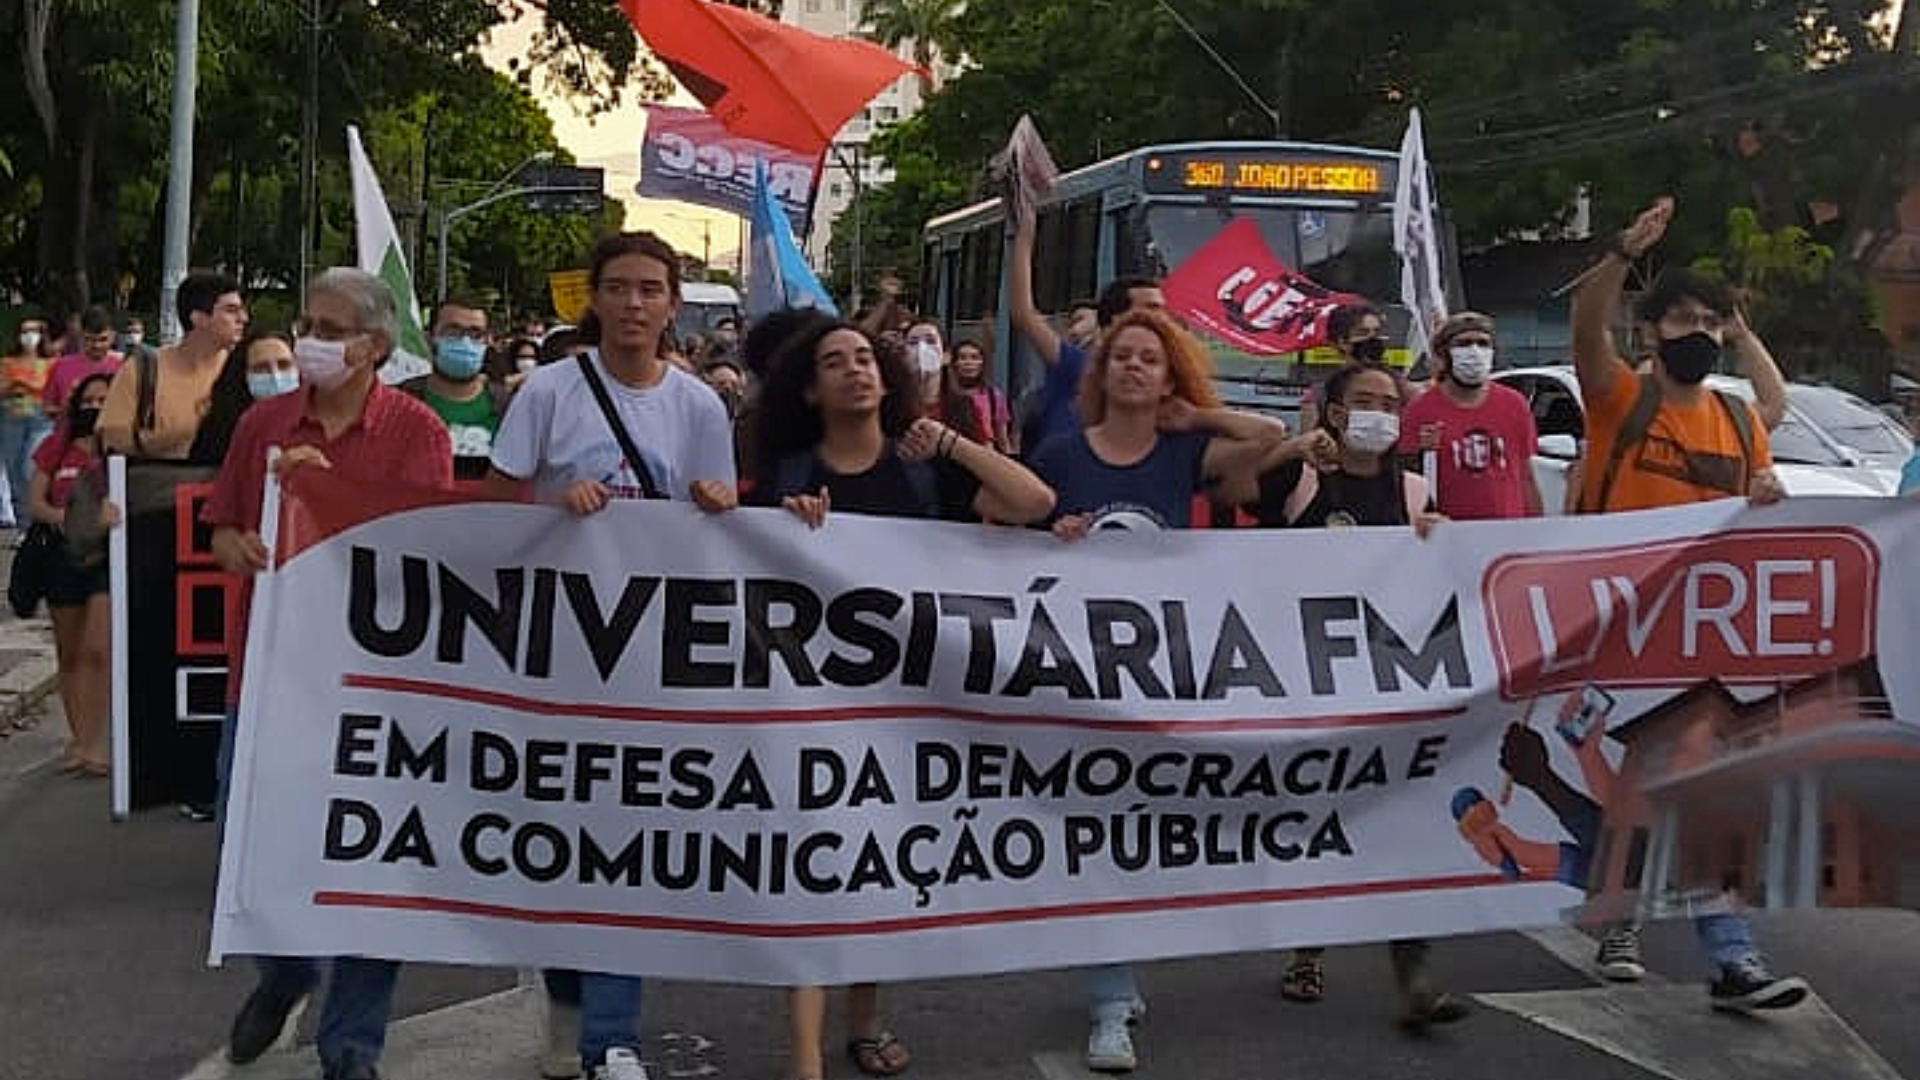 Rádio Universitária FM da Universidade Federal do Ceará está sob ameaça de censura